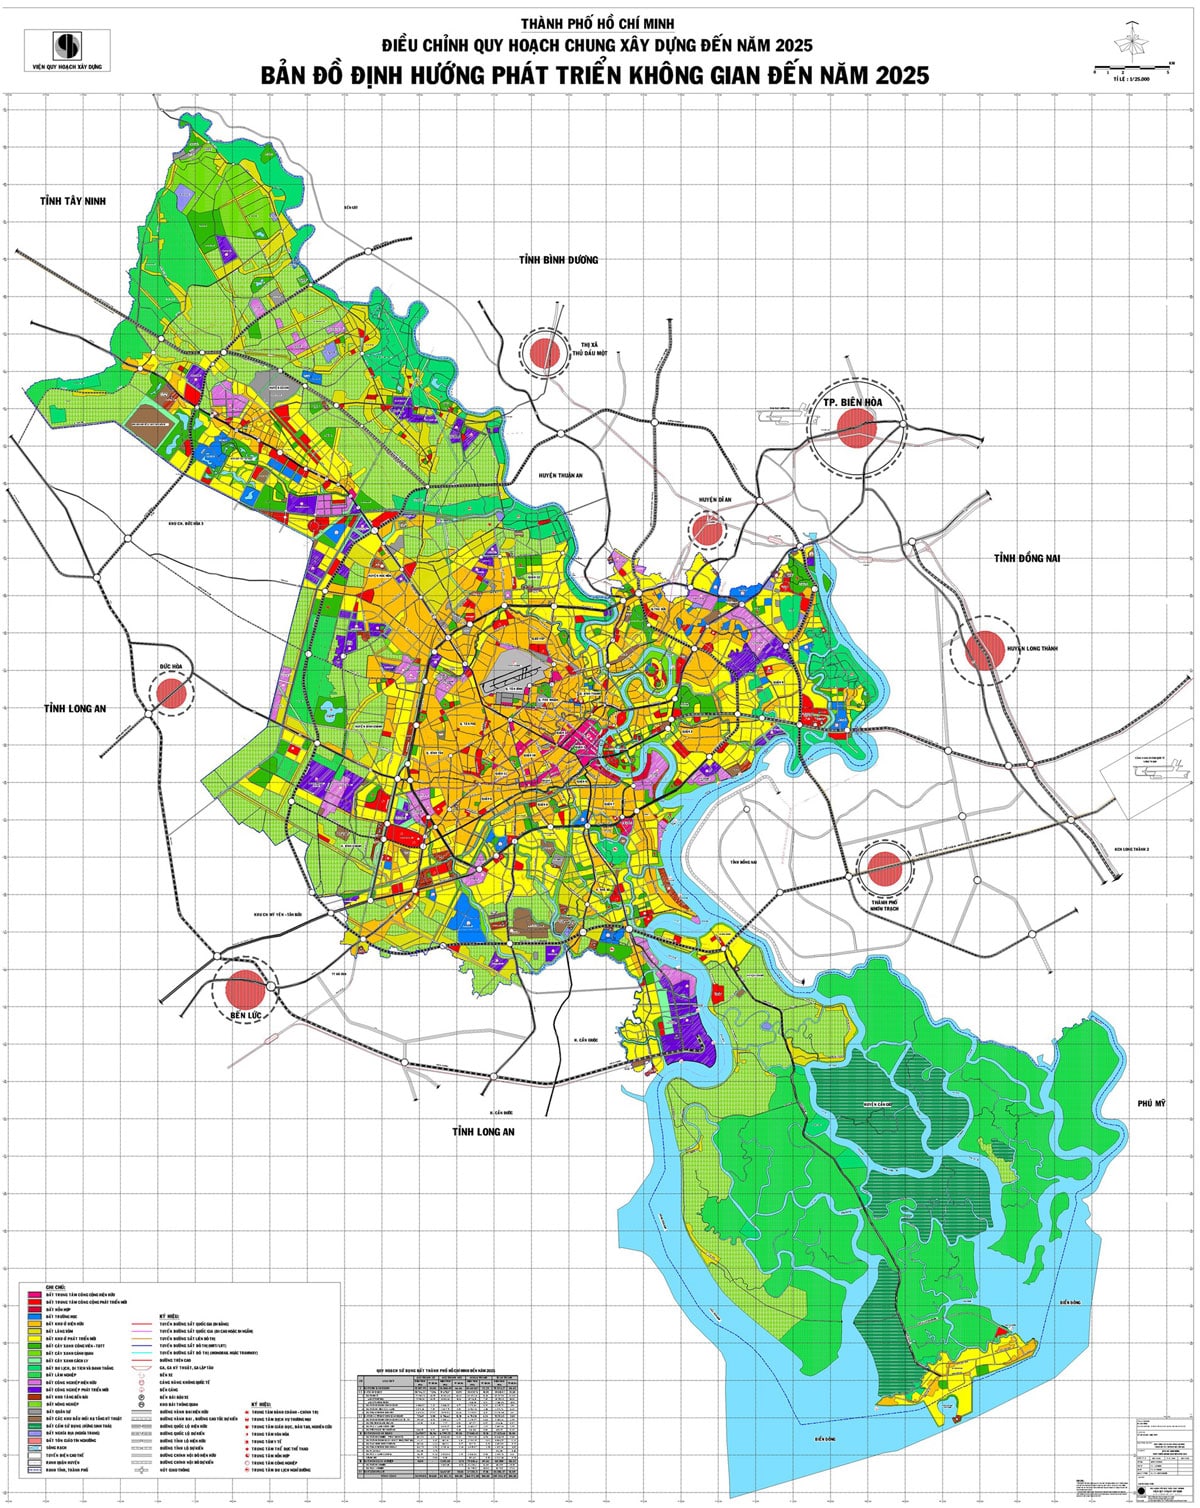 Thành phố Hồ Chí Minh Điều chỉnh quy hoạch chung xây dựng đến năm 2025. Ban đồ định hướng phát triển không gian đến năm 2025 - BẢN ĐỒ HÀNH CHÍNH TPHCM VÀ 24 QUẬN HUYỆN MỚI NHẤT 2023